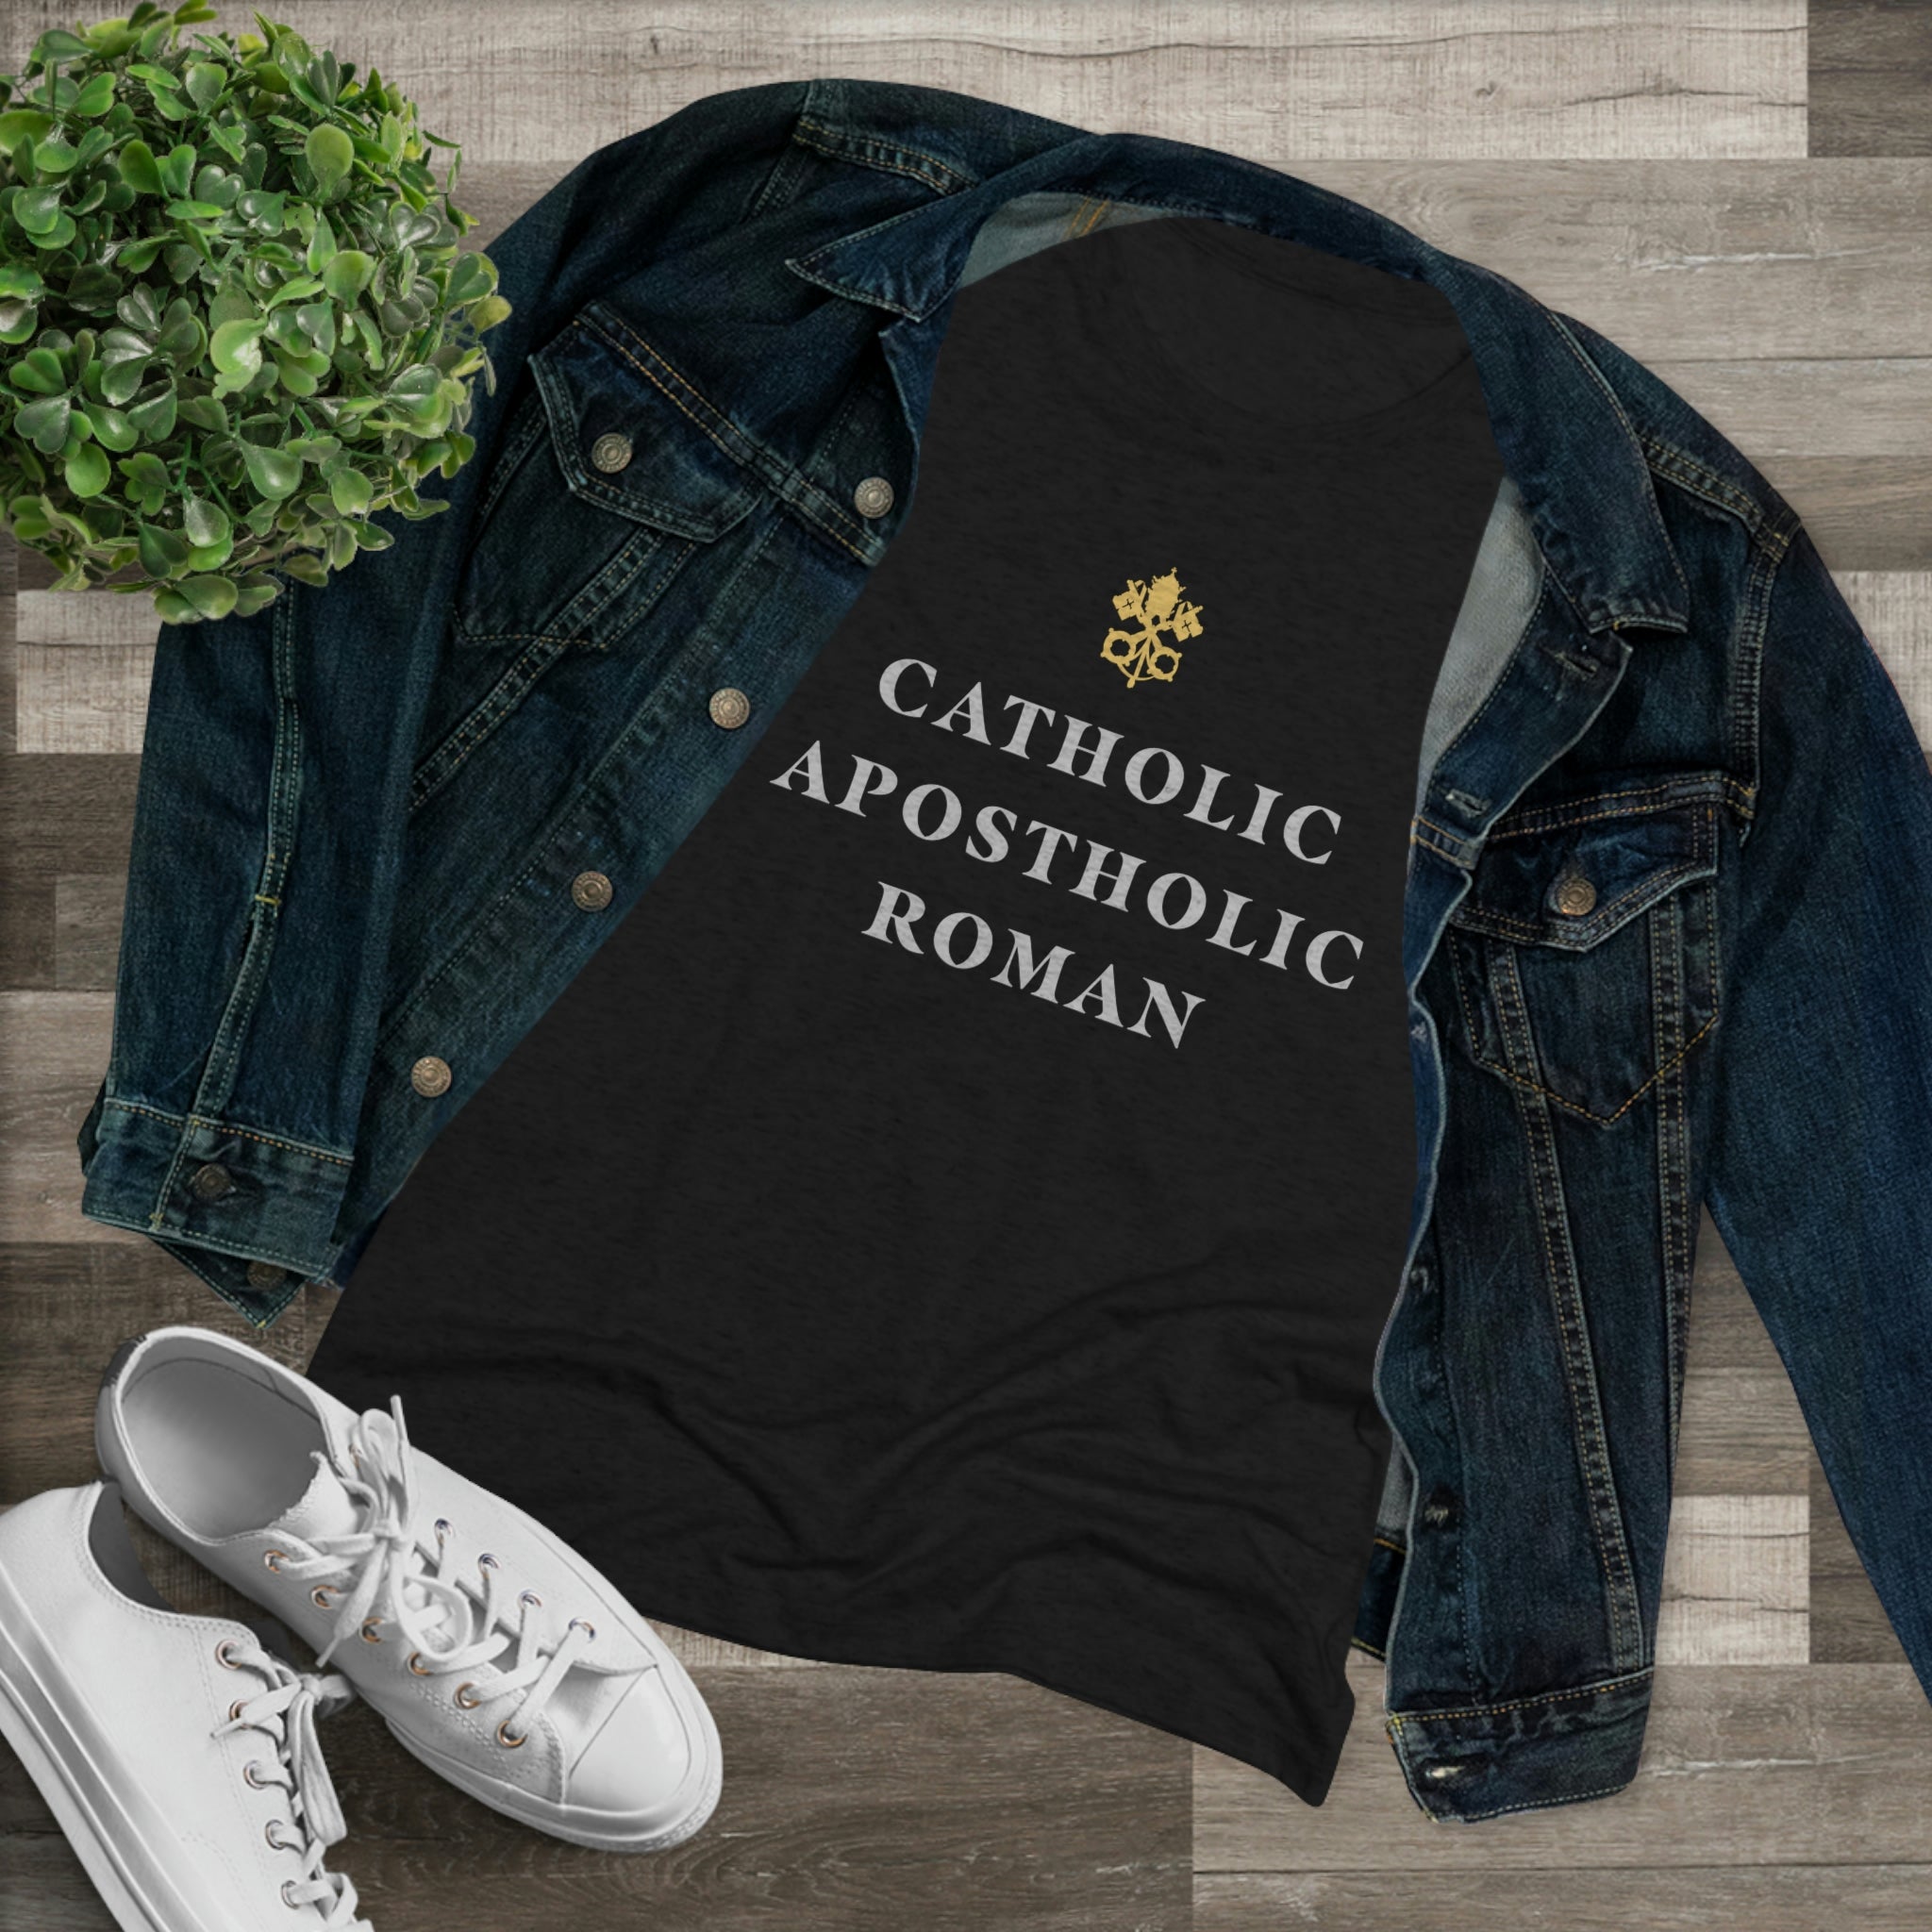 Women's Catholic Premium T-shirt